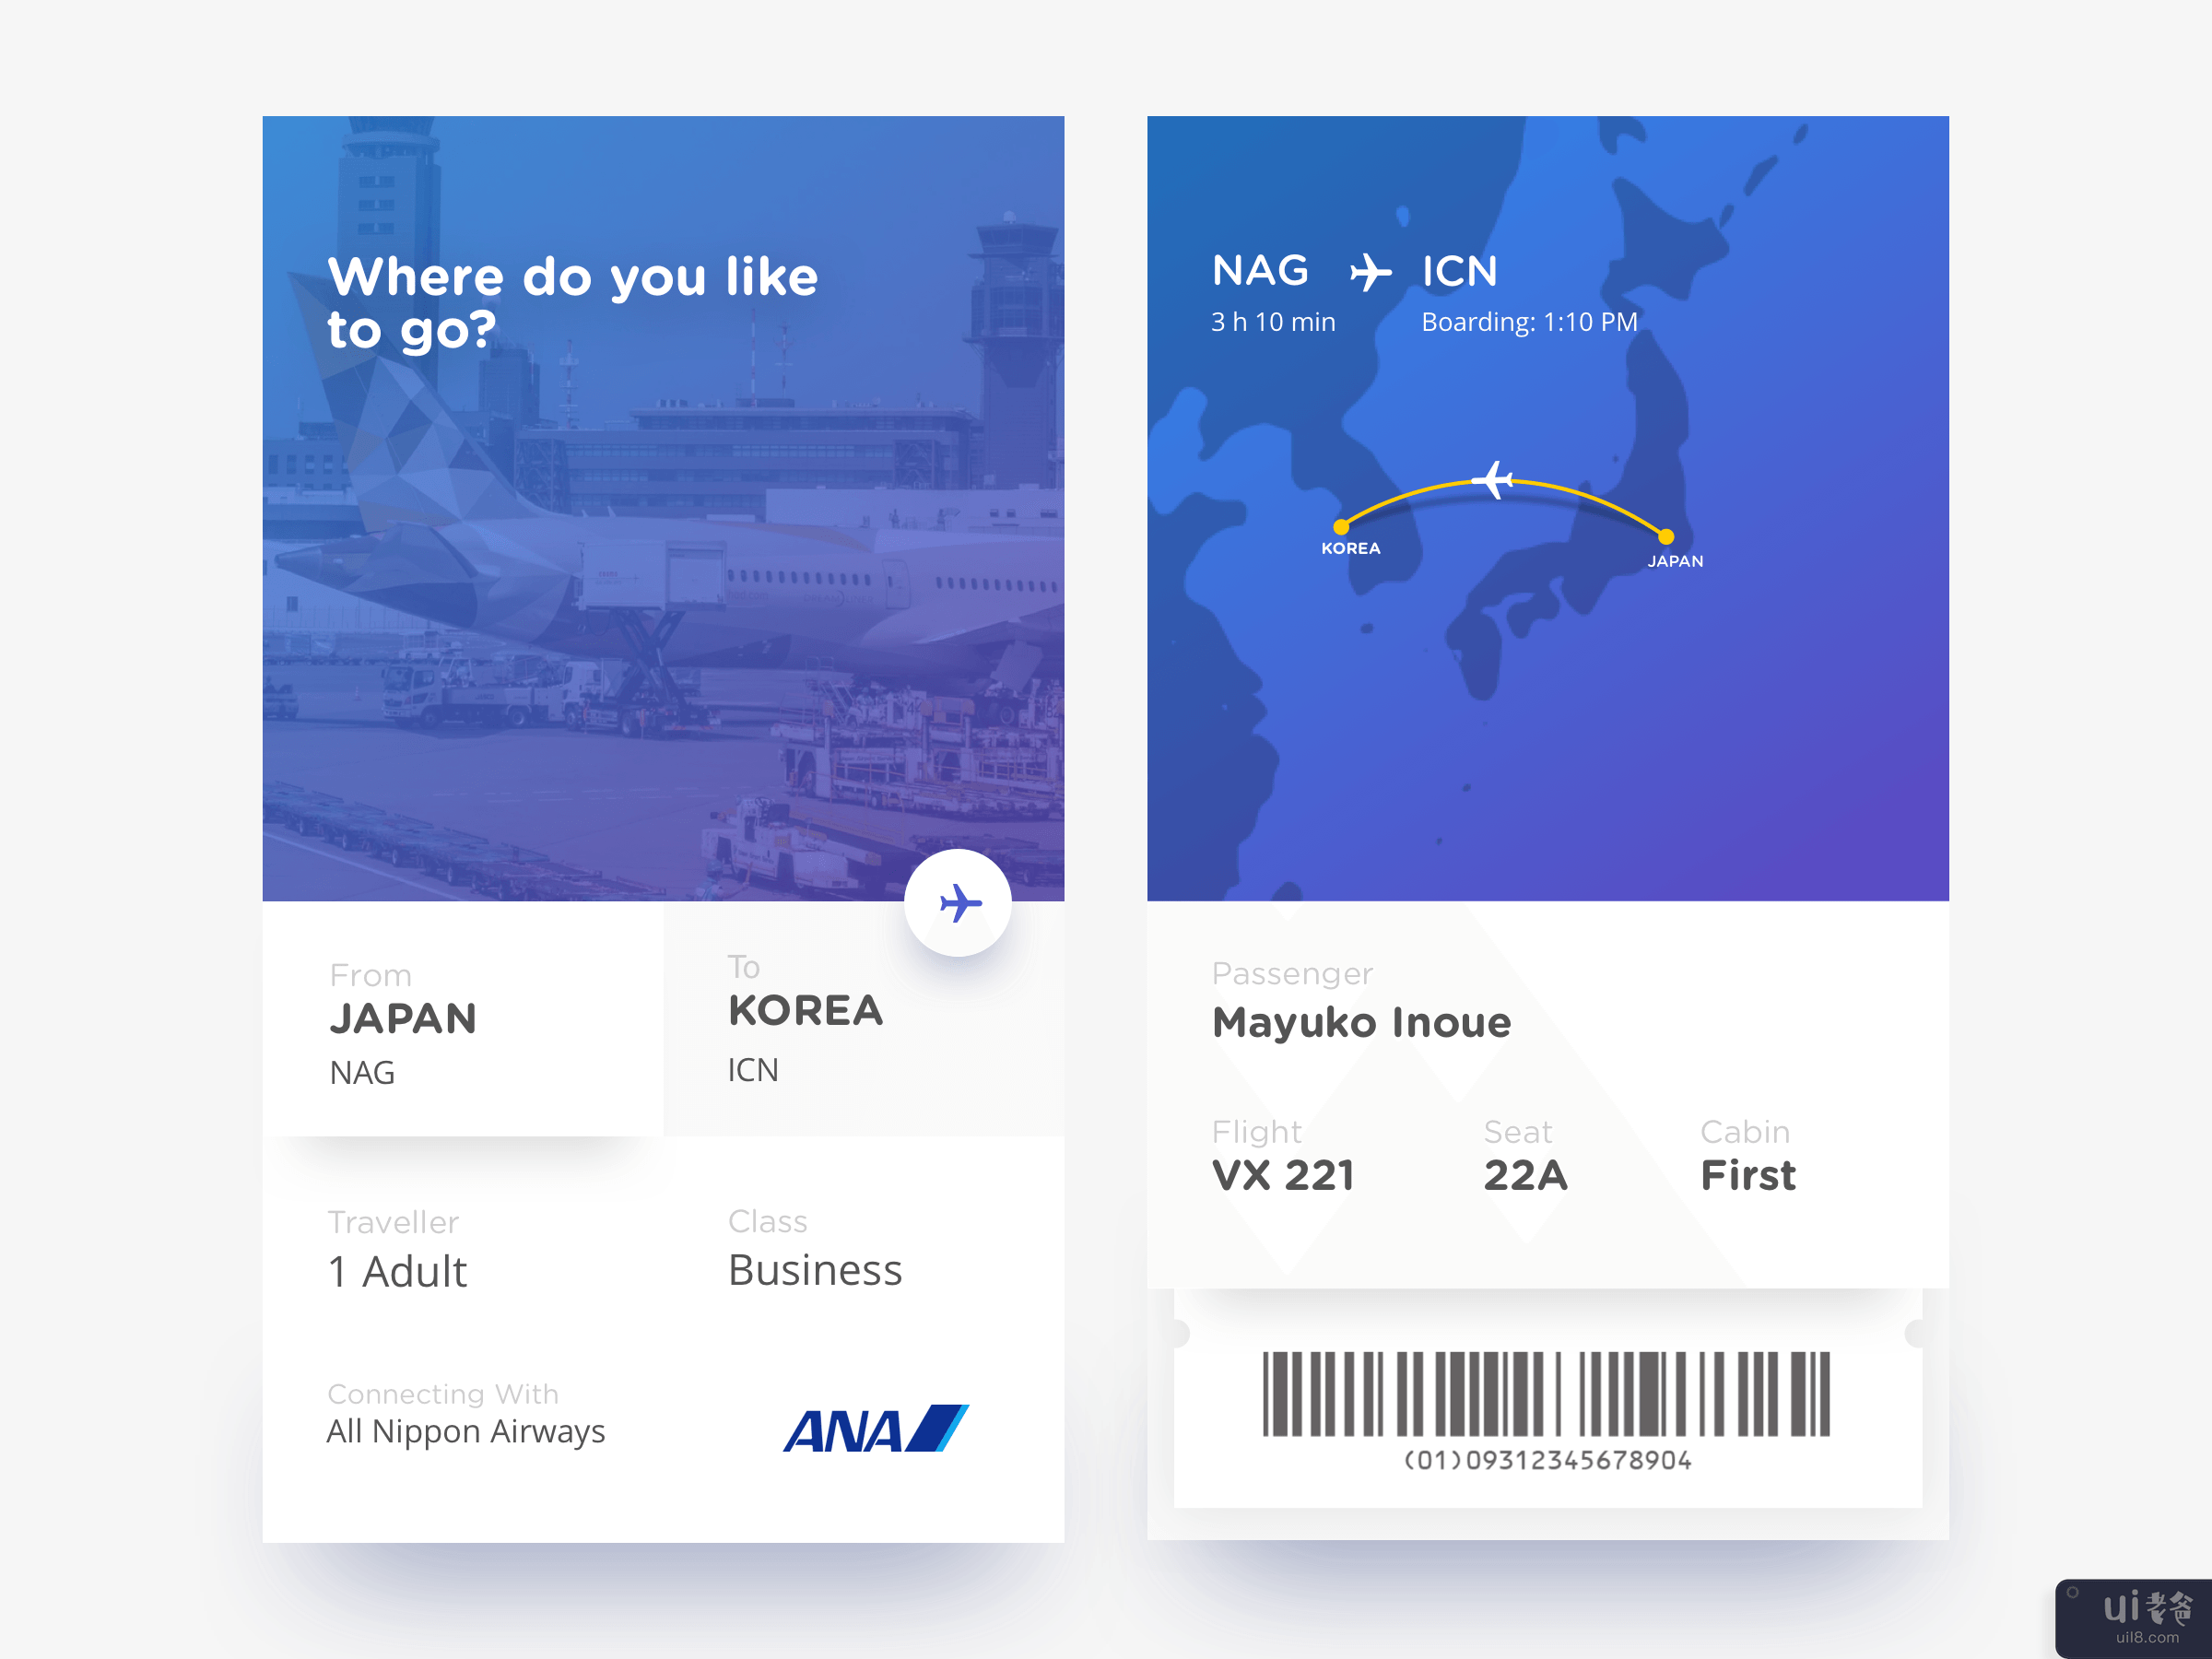 带条形码的移动机票(Mobile Flight Ticket With Barcode)插图